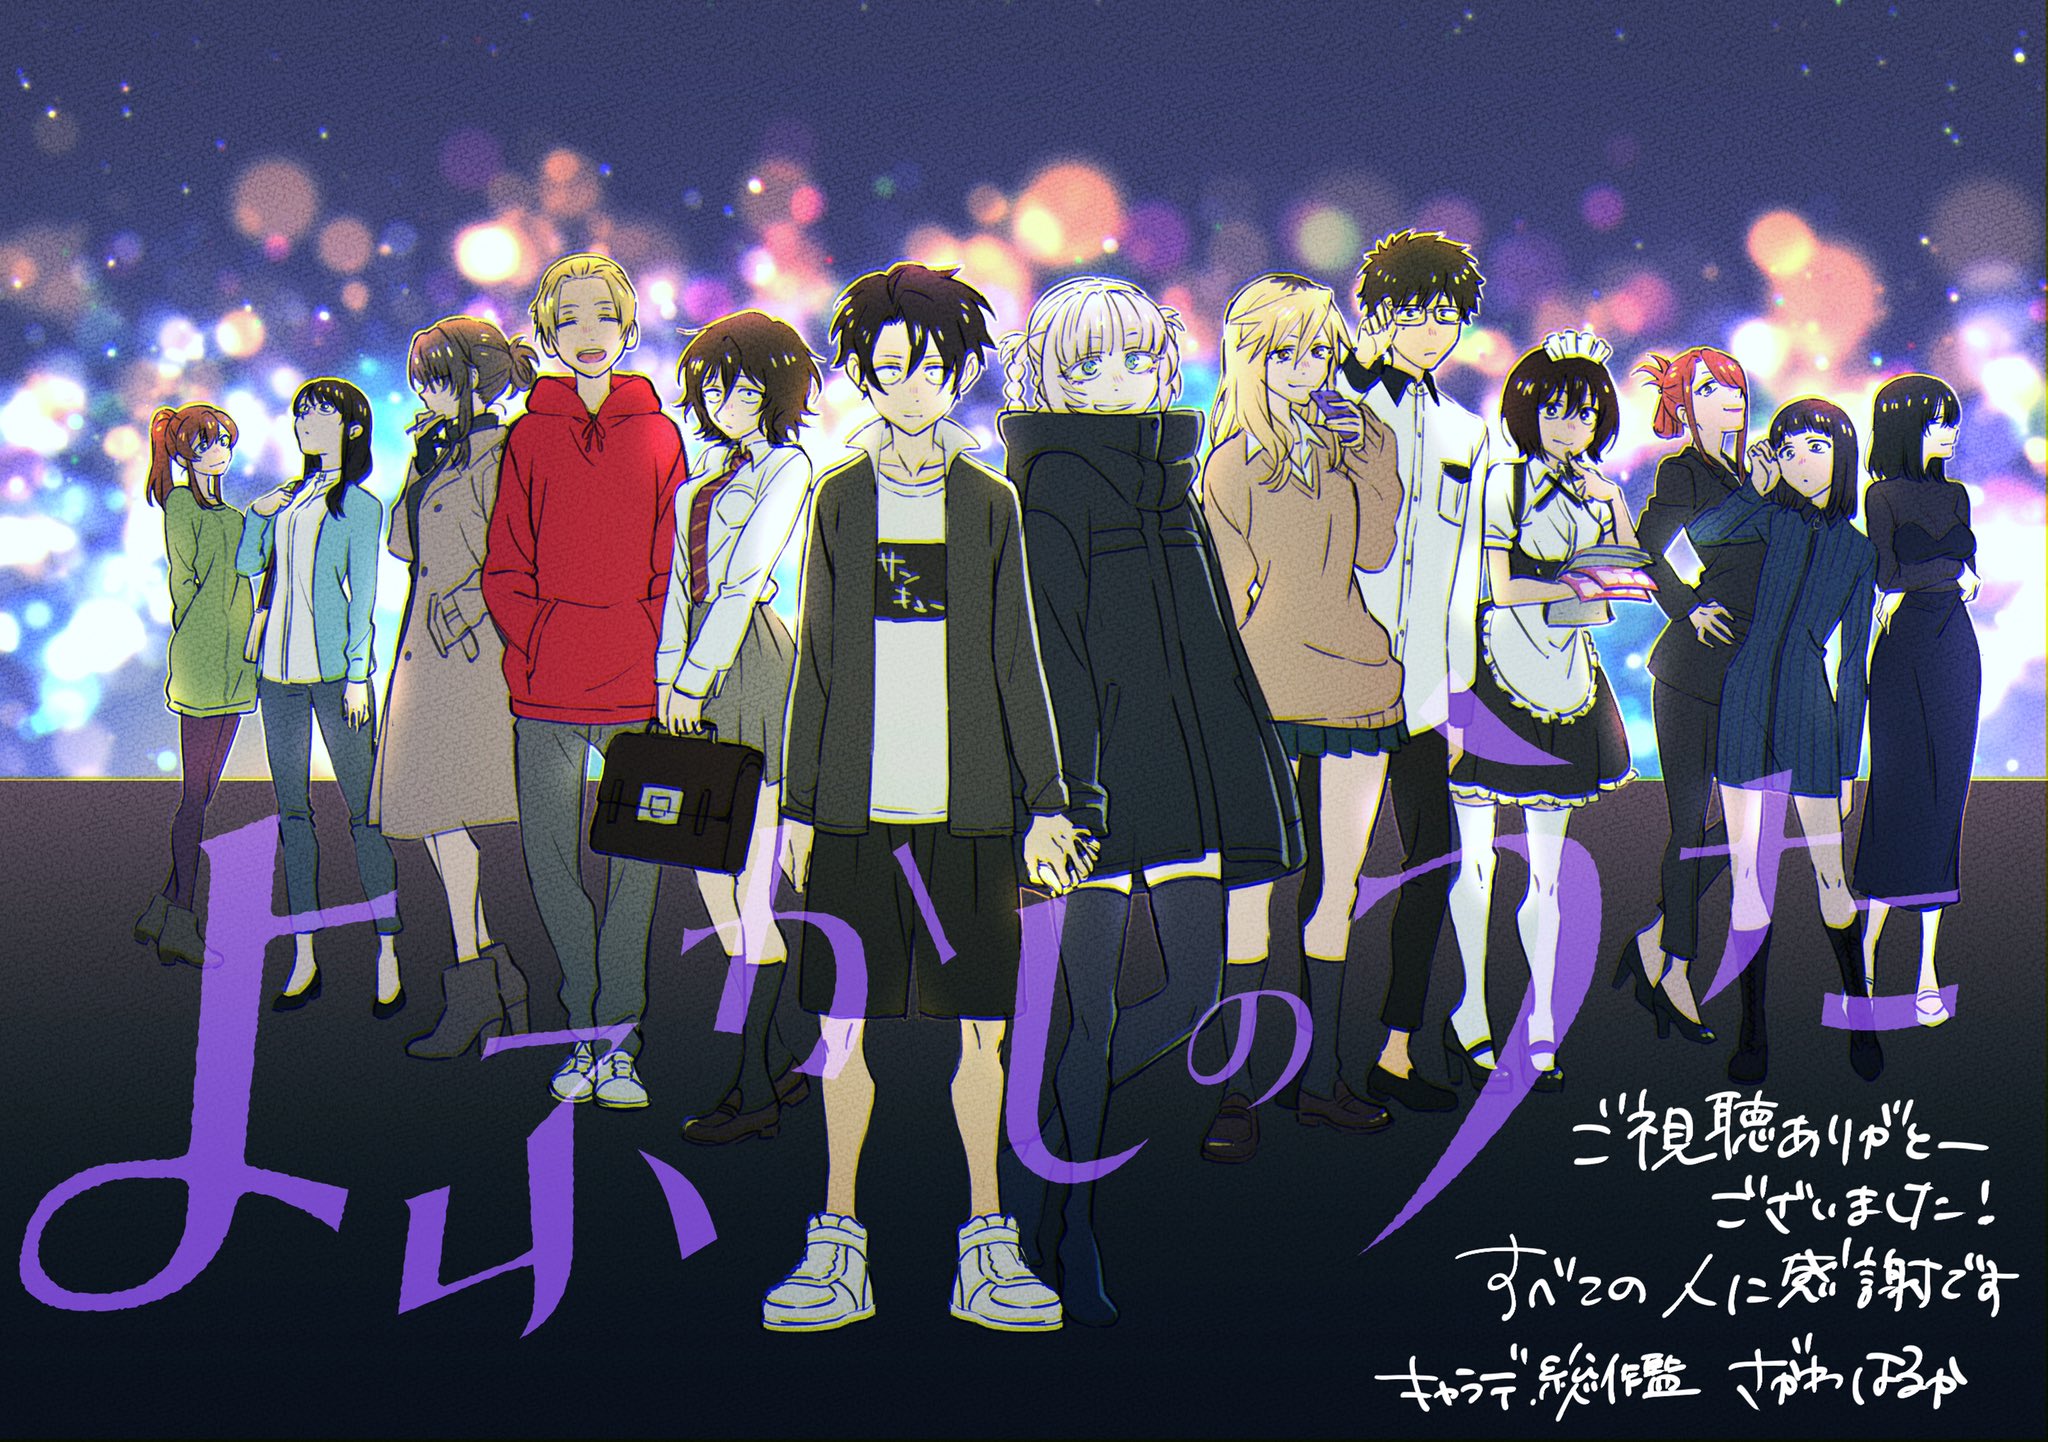 El anime Yofukashi no Uta revela un nuevo visual y más miembros del elenco  — Kudasai